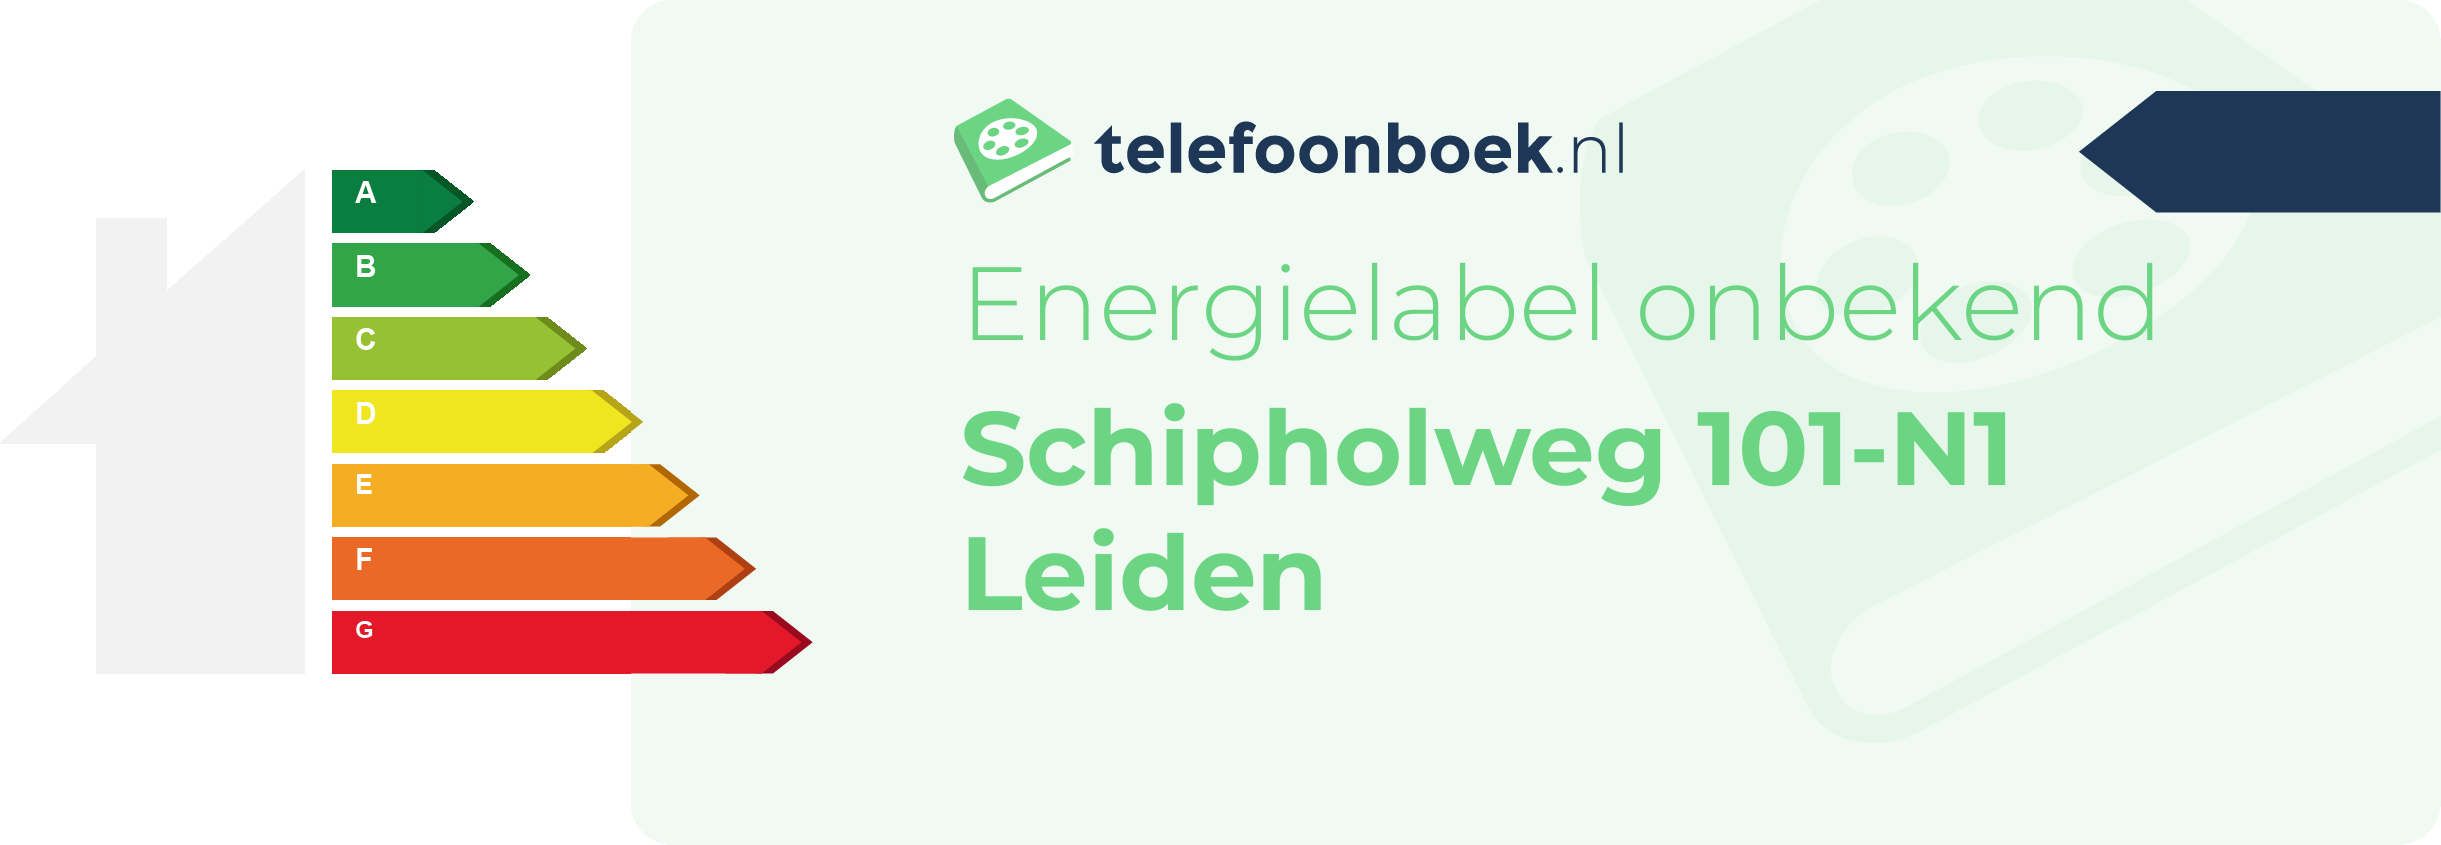 Energielabel Schipholweg 101-N1 Leiden